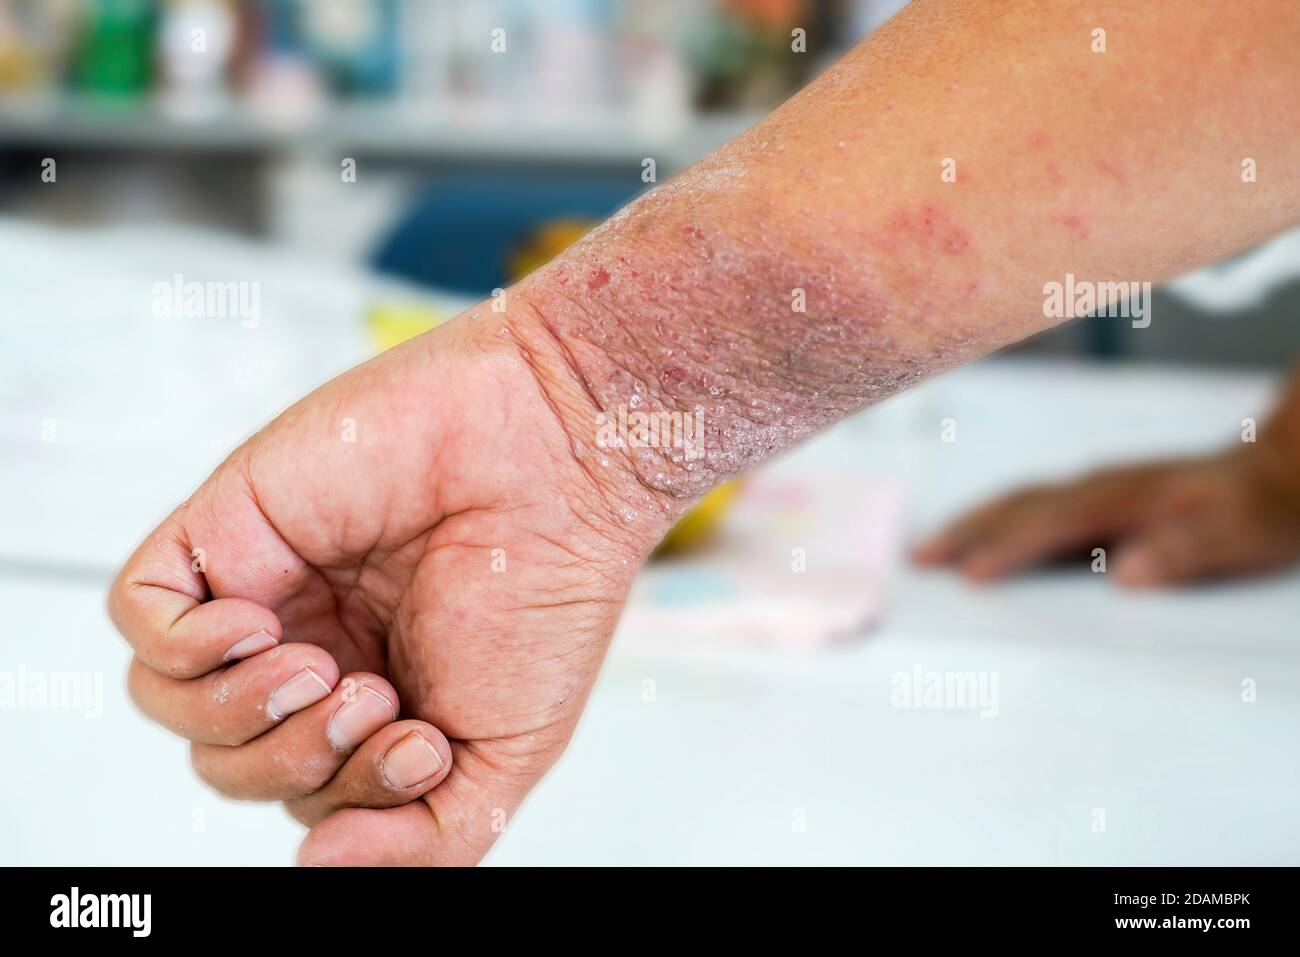 Eczema skin blisters Banque de photographies et d'images à haute ...